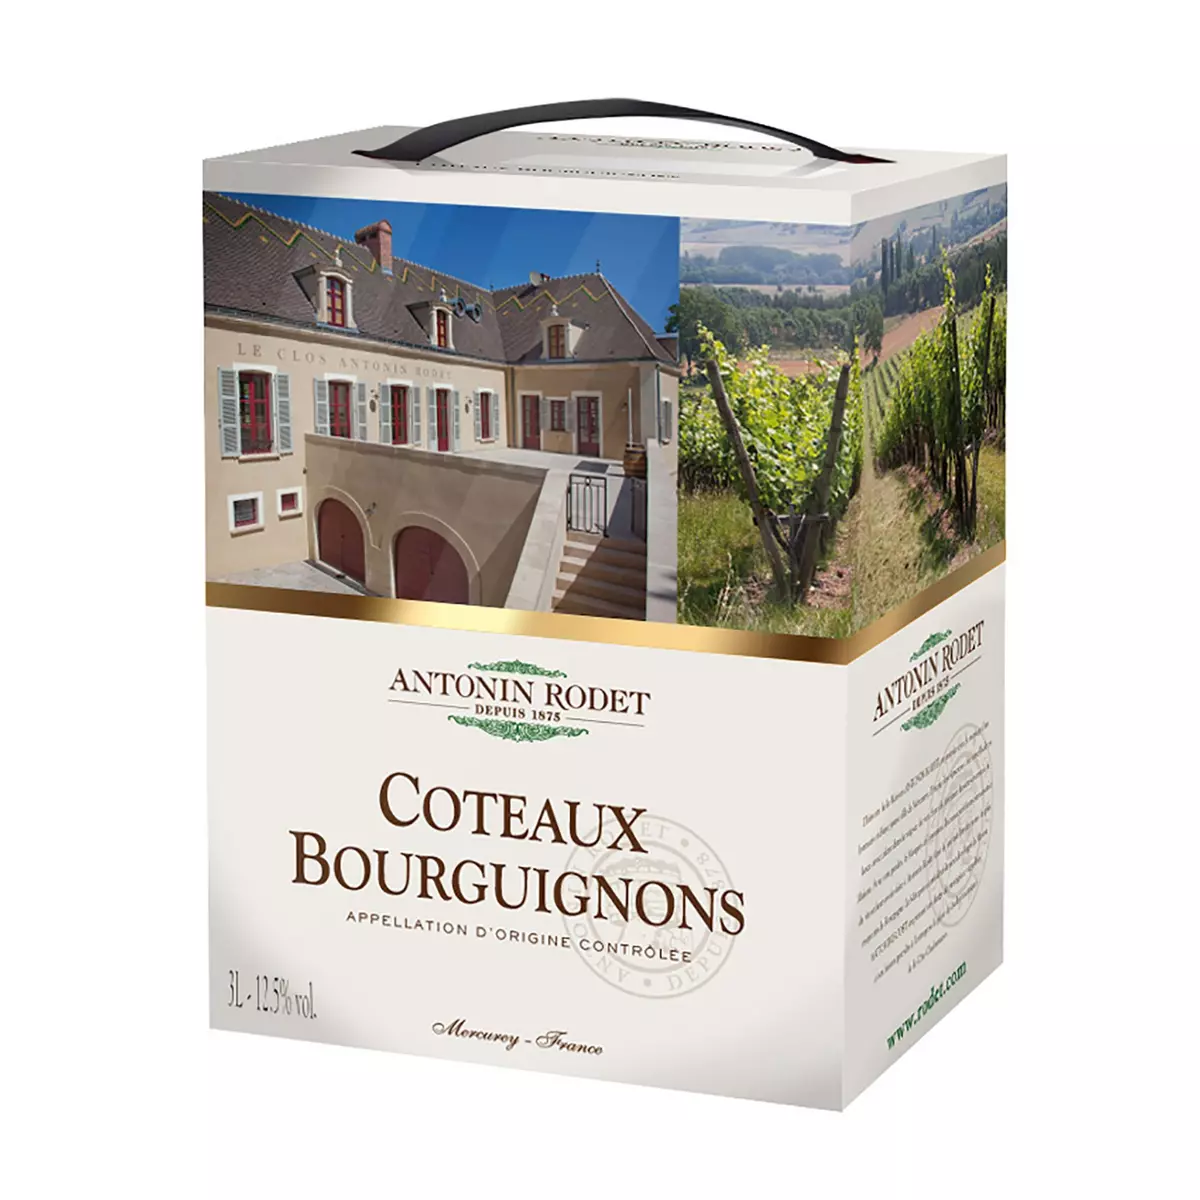 AOP Coteaux Bourguignons Antonin Rodet rouge bib 3l